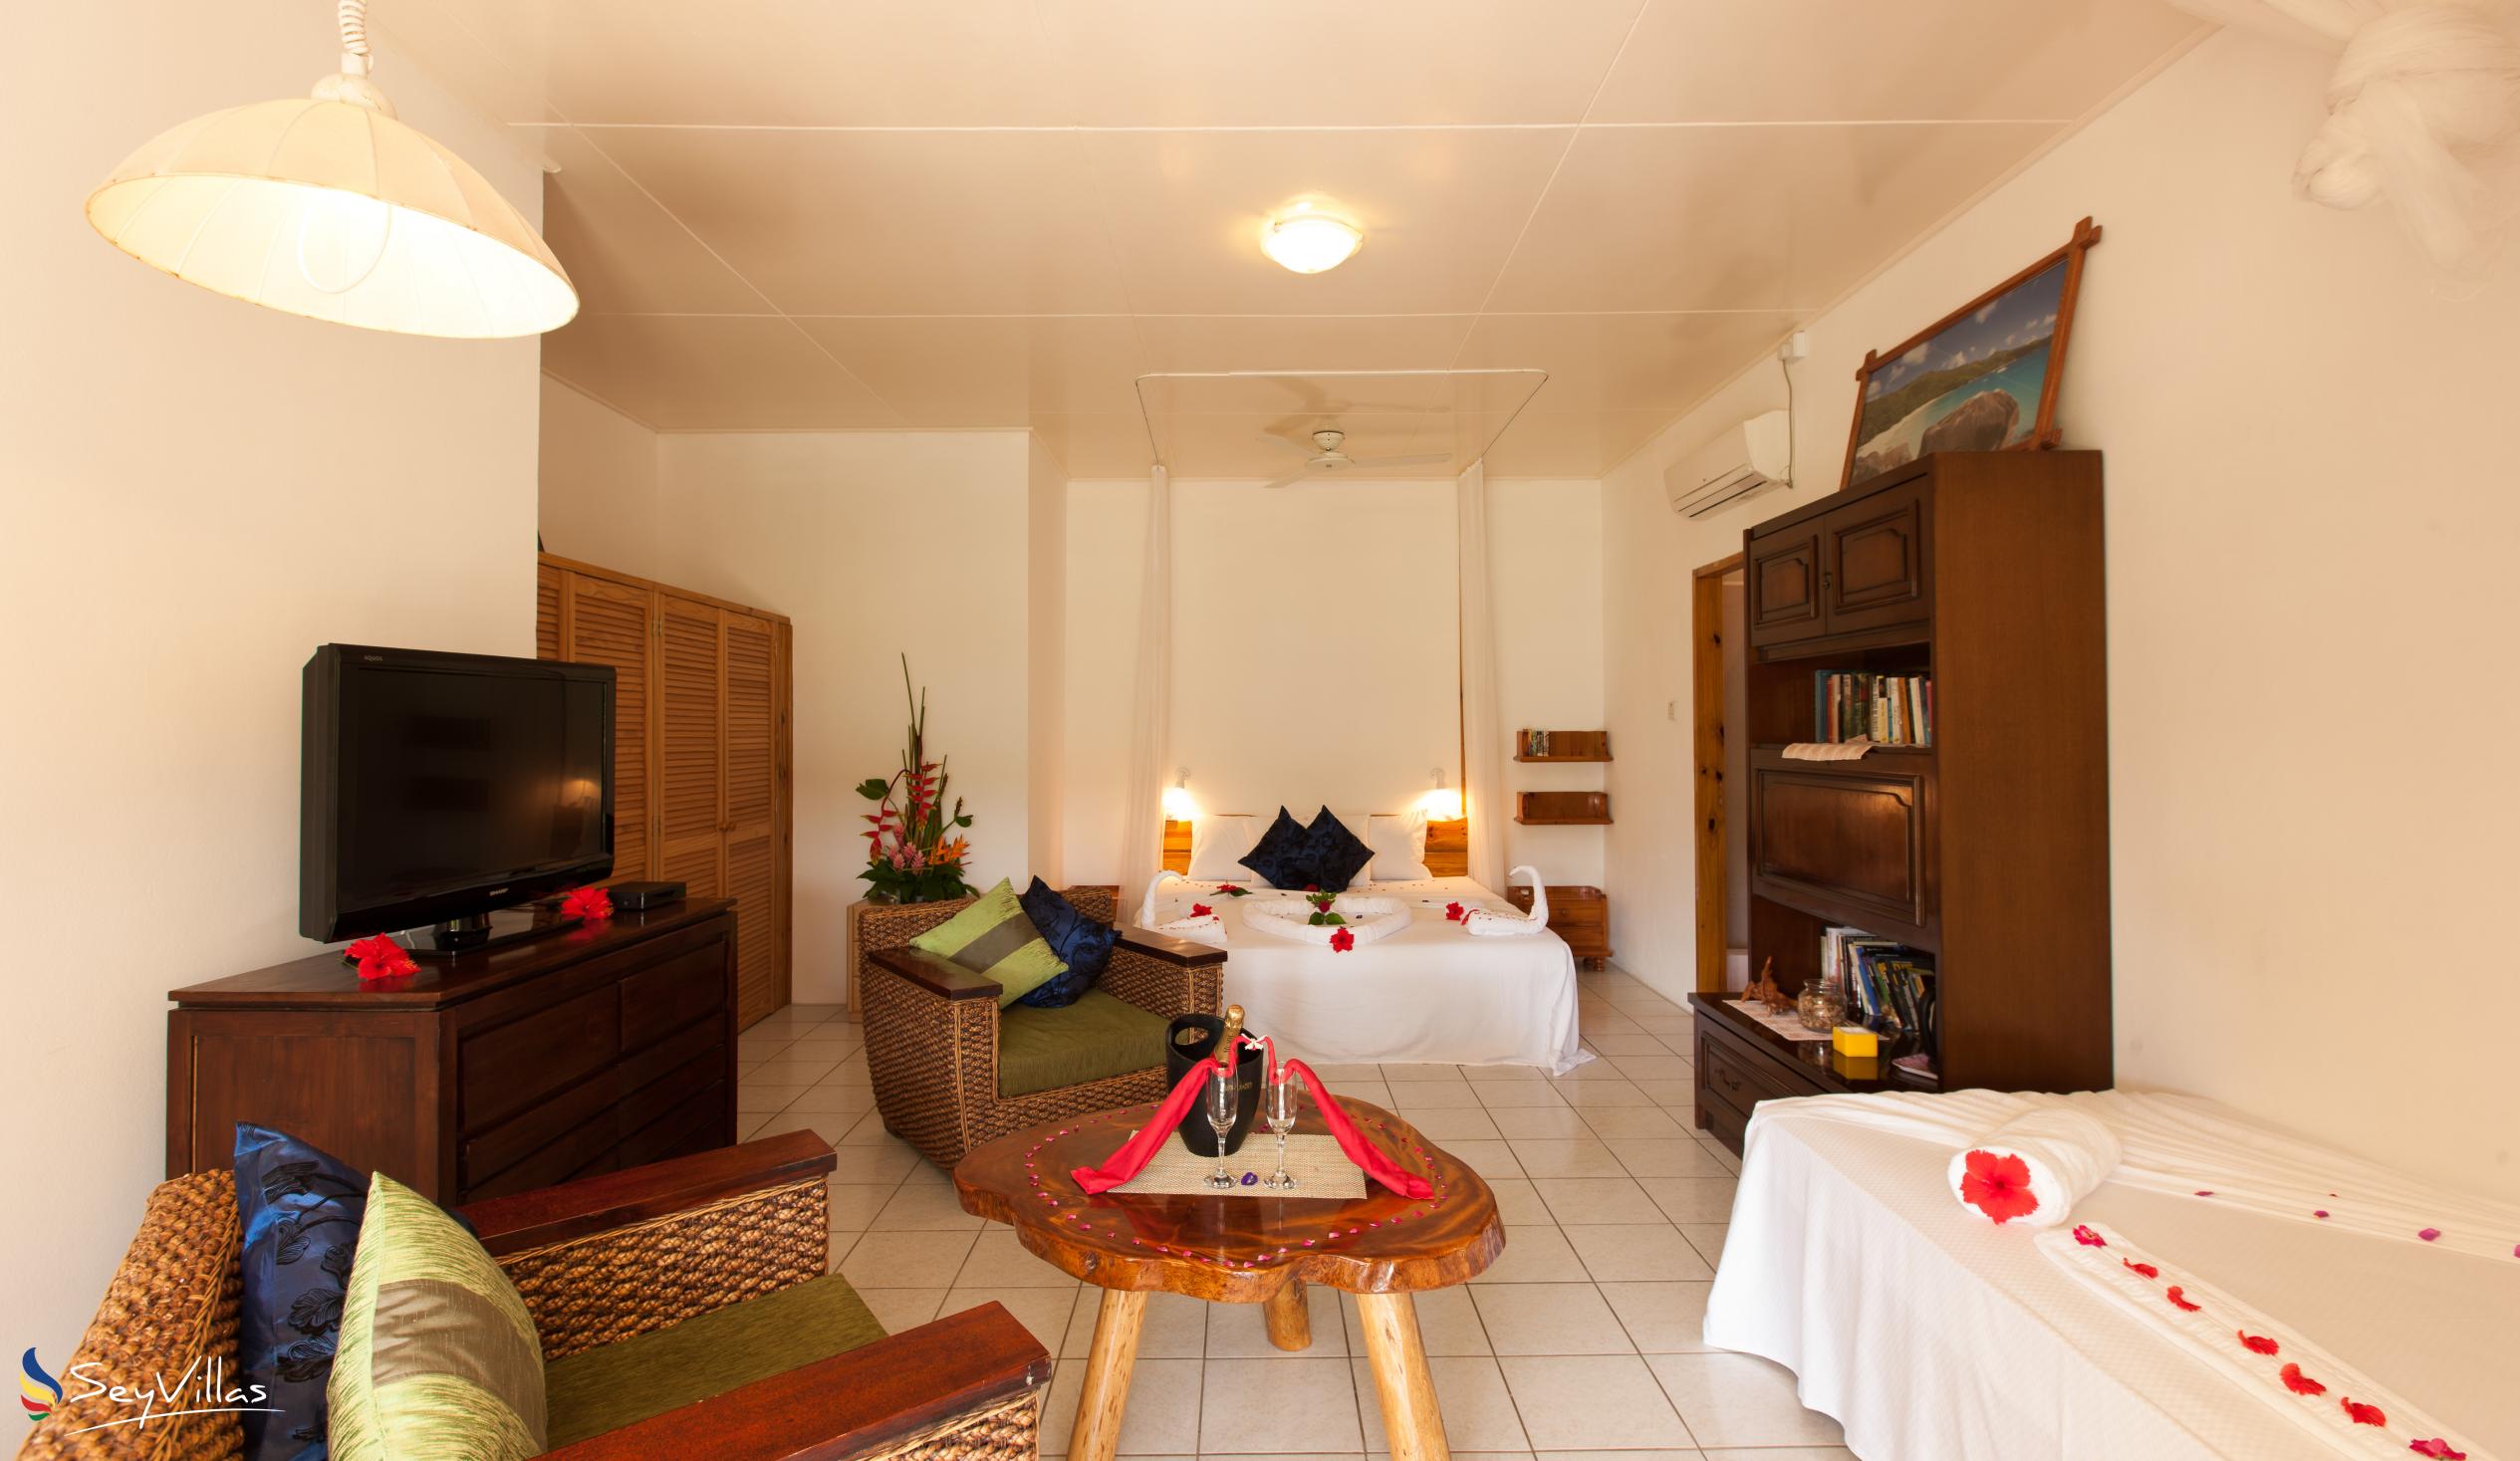 Foto 26: Le Relax St. Joseph Guest House - Chambre Supérieure - Praslin (Seychelles)